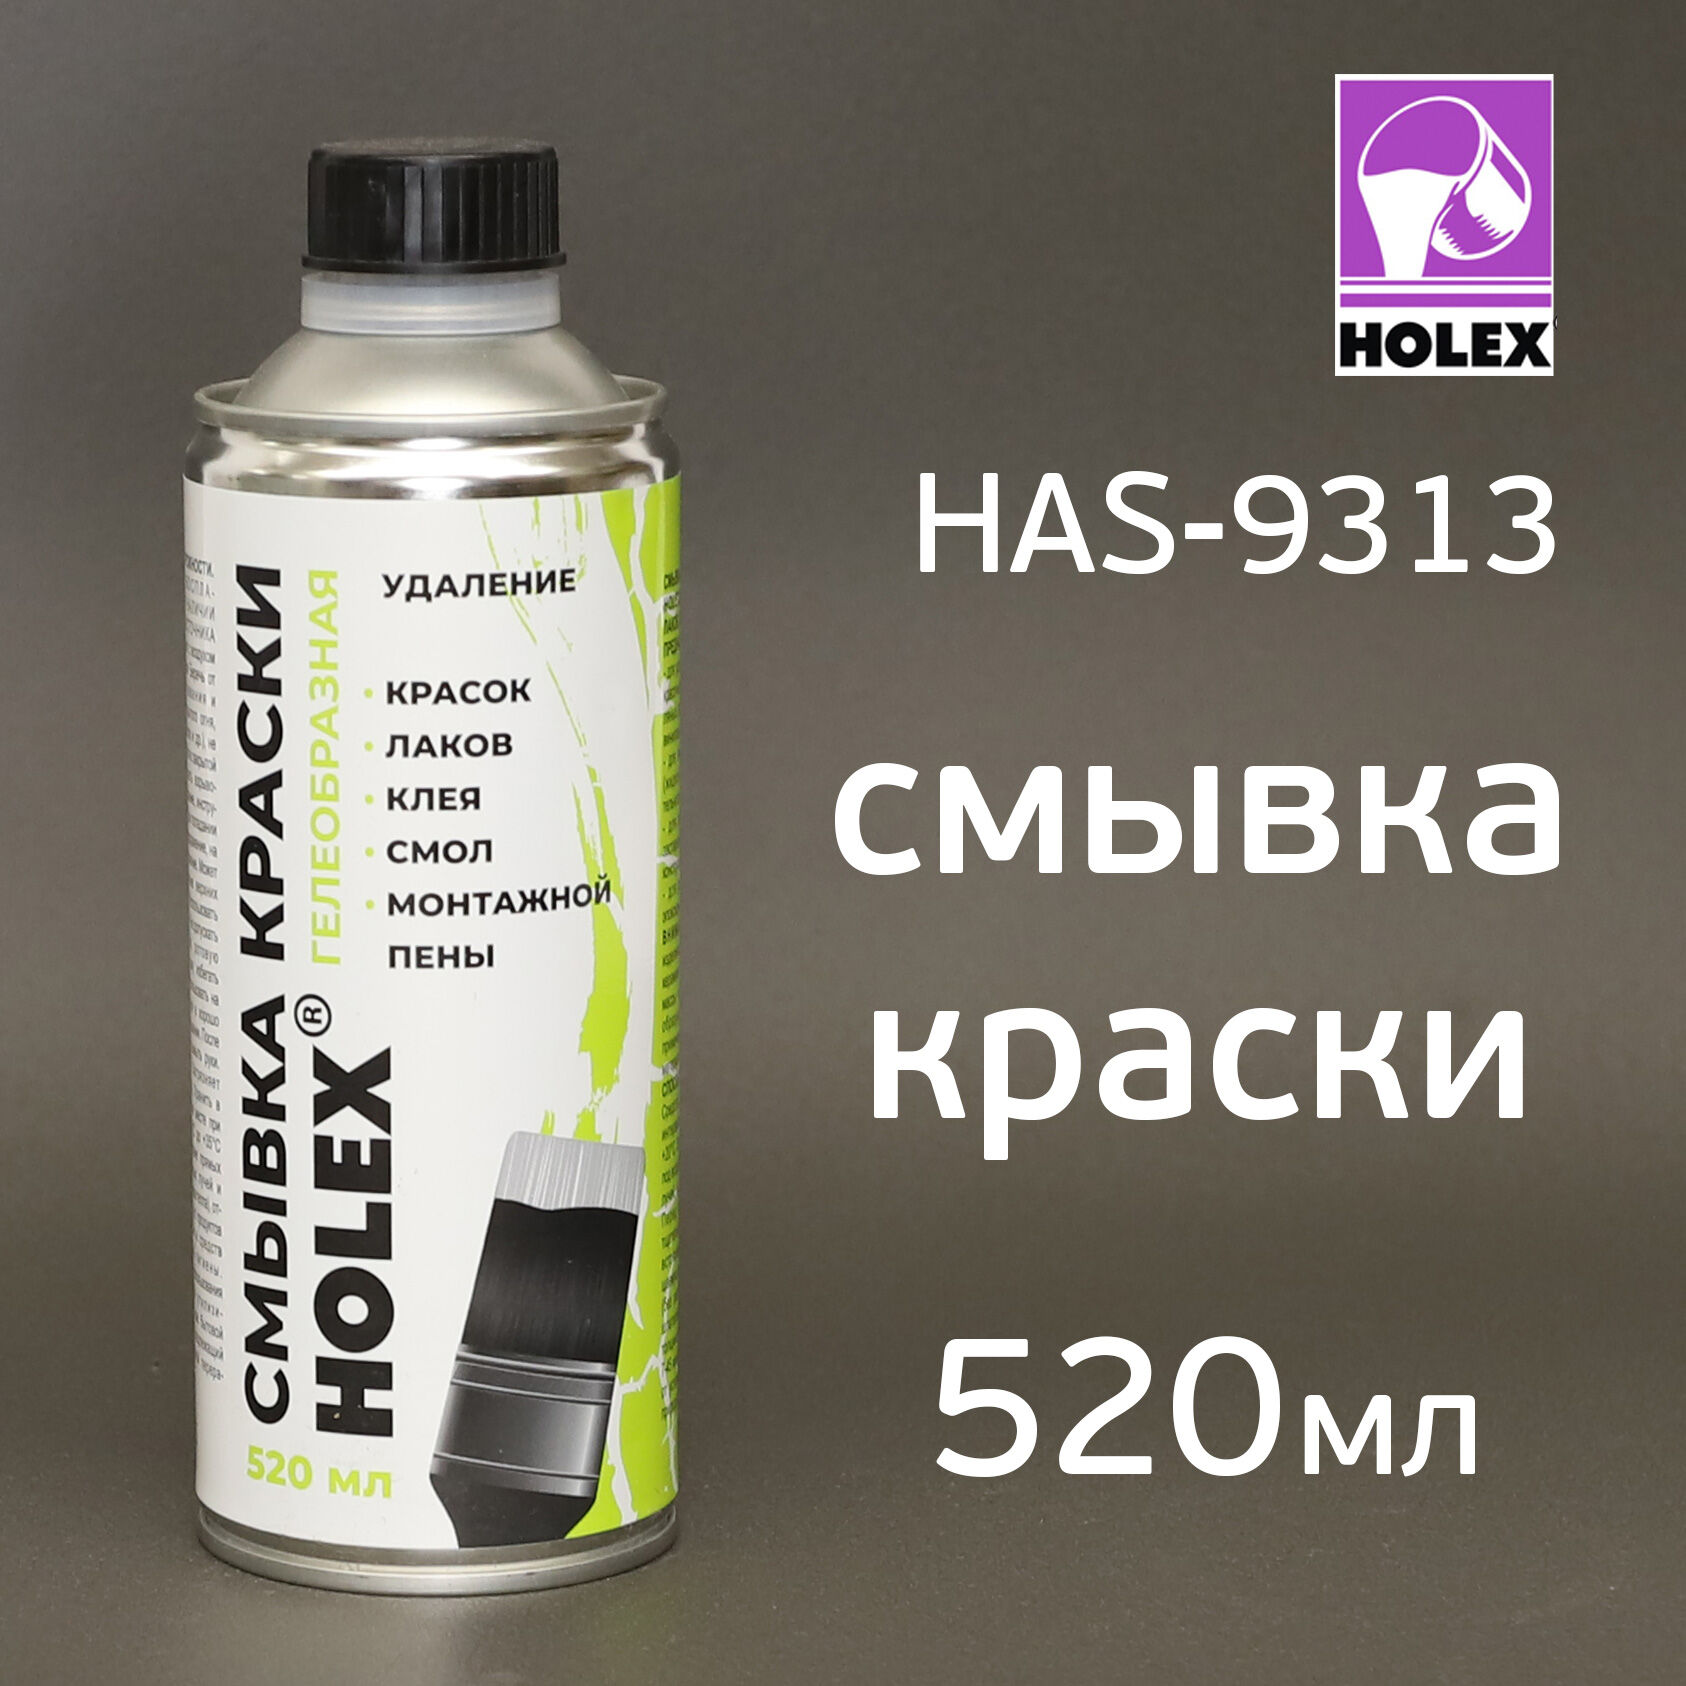 Смывка краски Holex HAS-9313 гелеобразная (520мл)